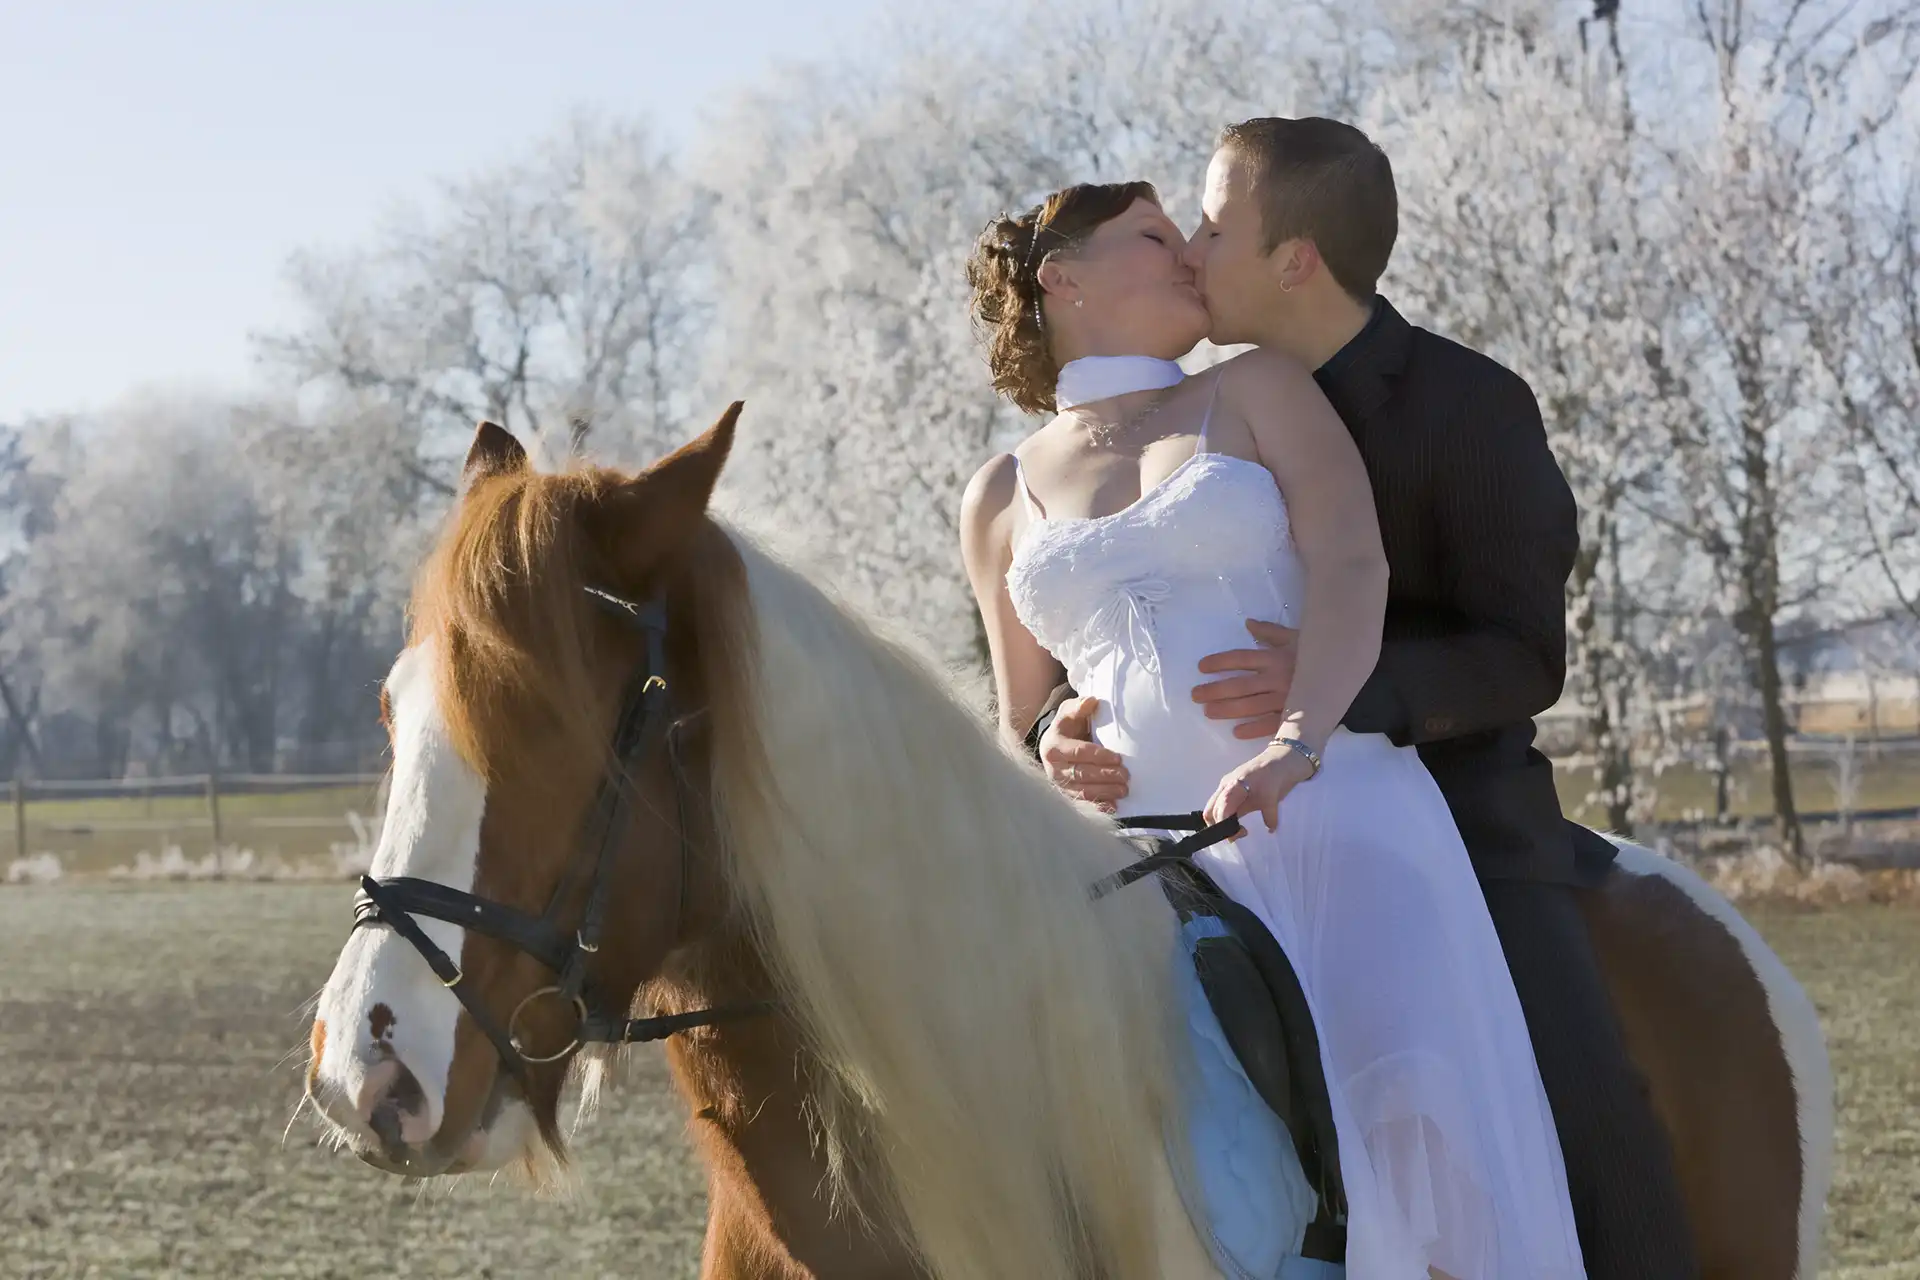 Farbfoto: Brautpaar gemeinsam auf einem Pferd sitzend. Die Braut in weißem Kleid, er im Anzug und die Braut sitz vorne, wendet sich zum Kuß nach hinten zu ihrem Mann. Er legt seine Hände um ihren Bauch, in dem sich offensichtlich ein Baby entwickelt.